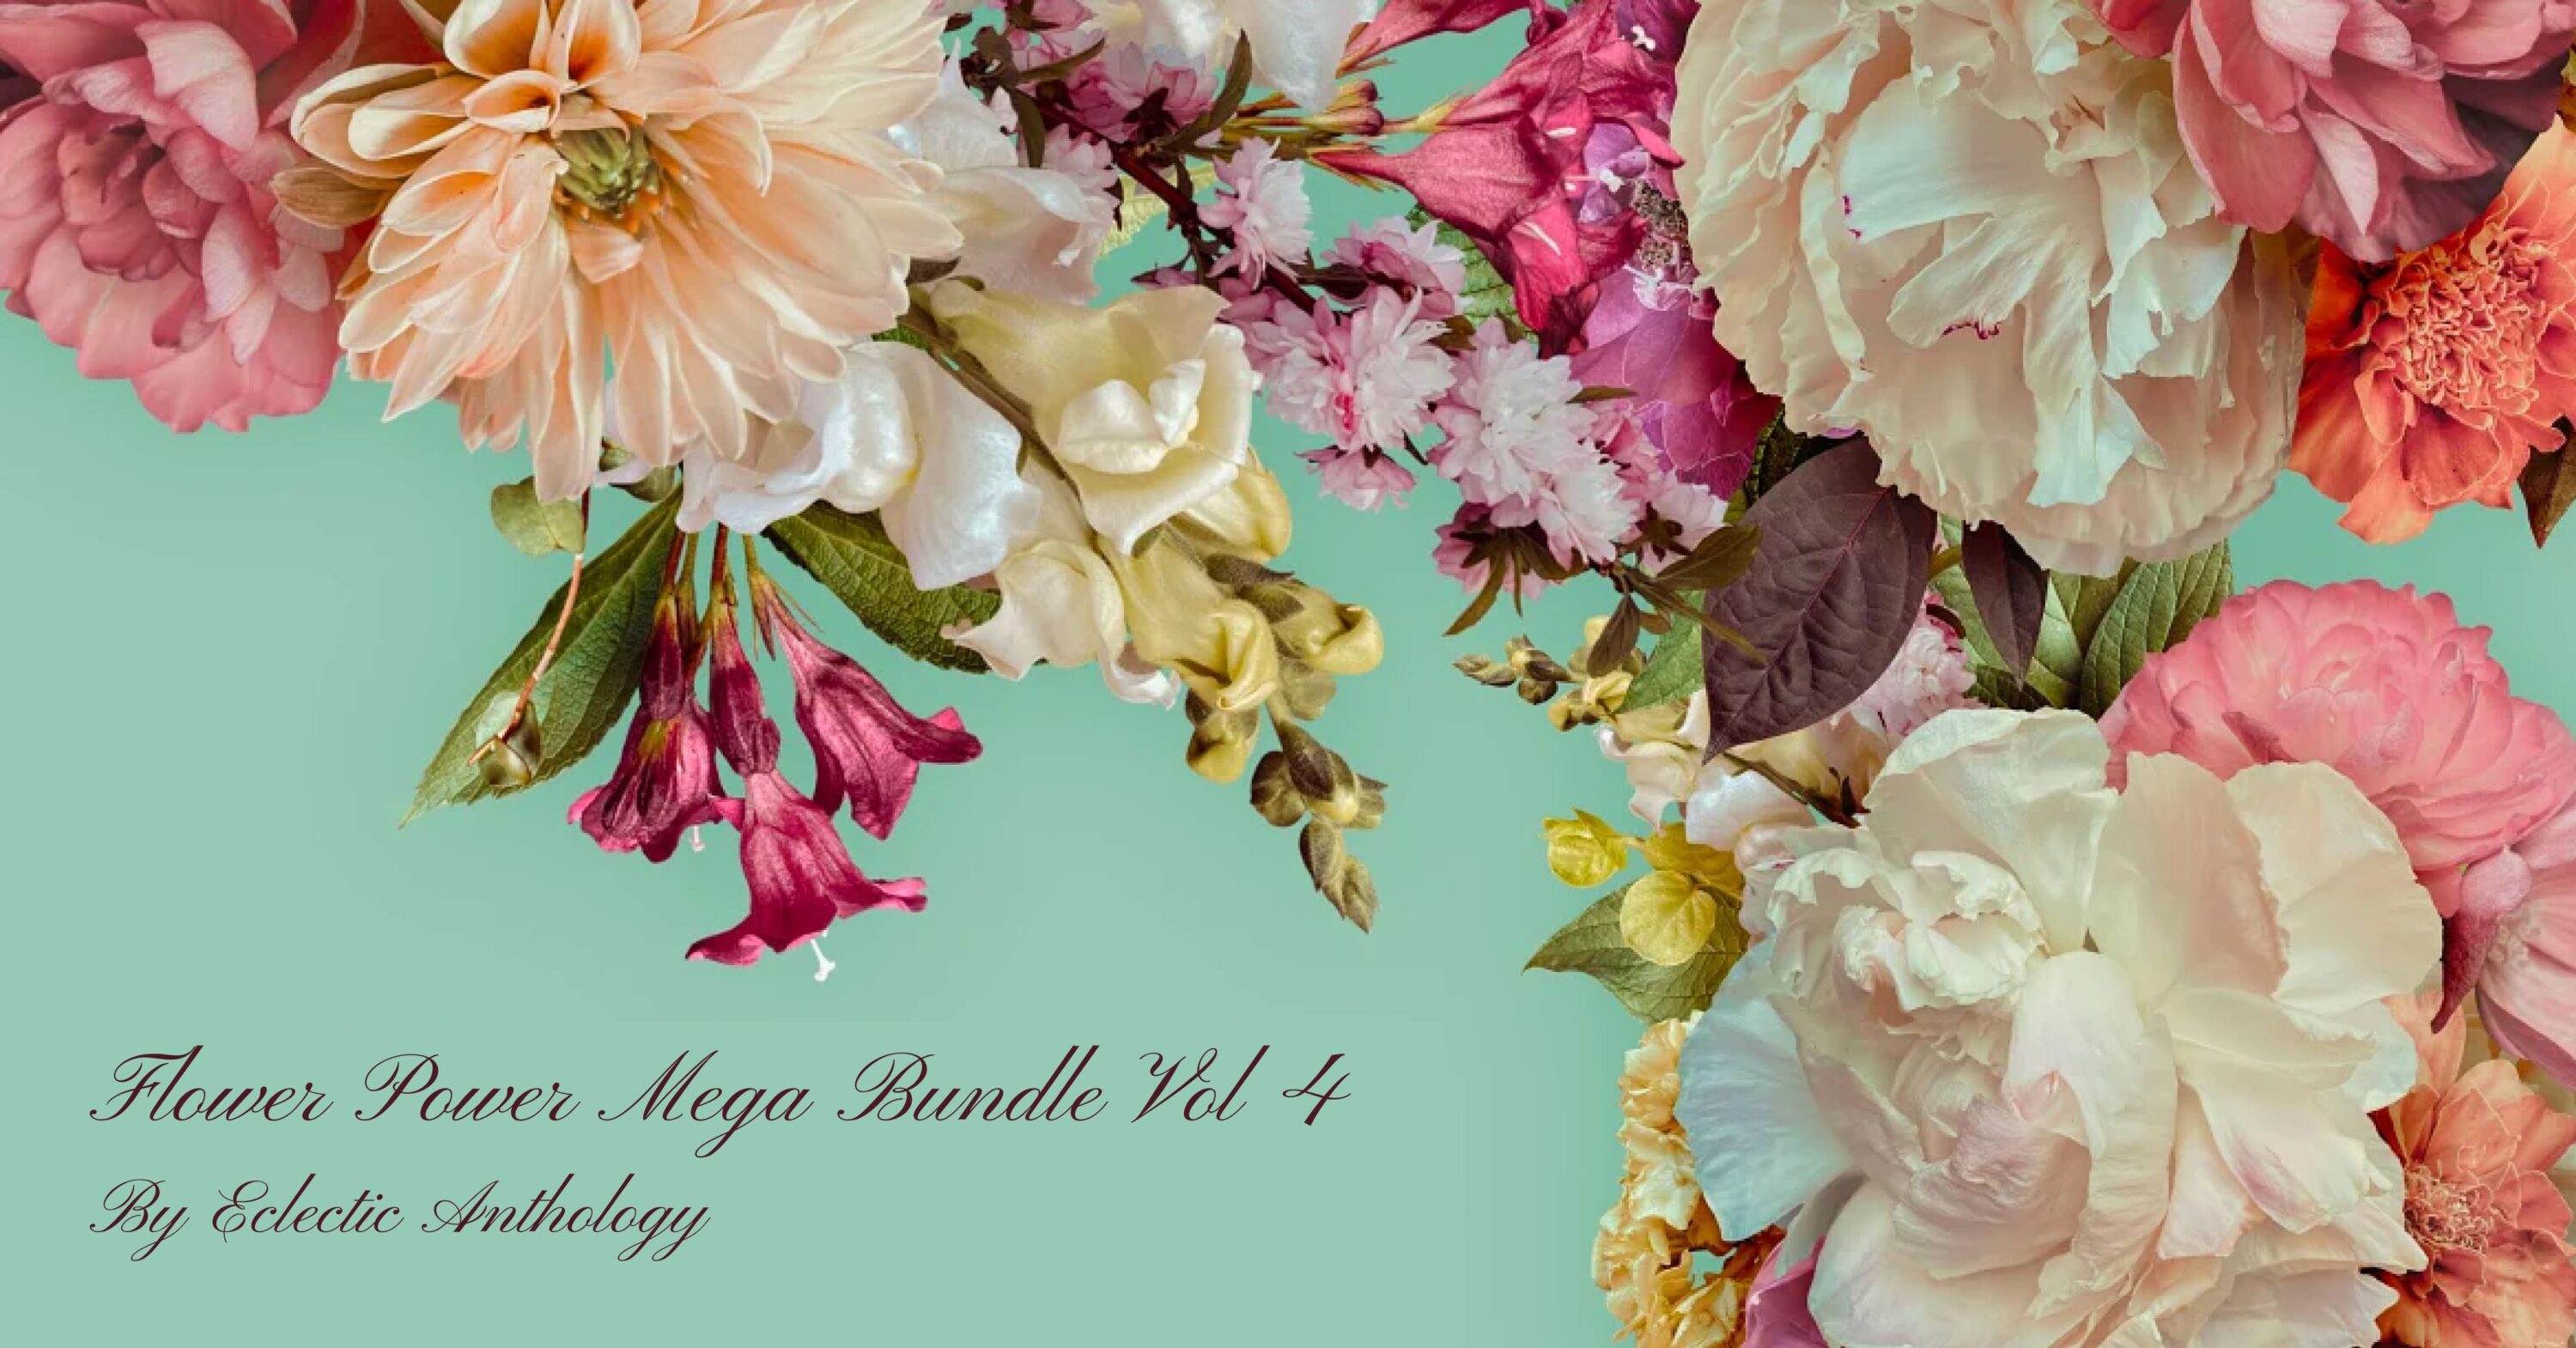 Flower Power Mega Bundle Vol 4 facebook image.